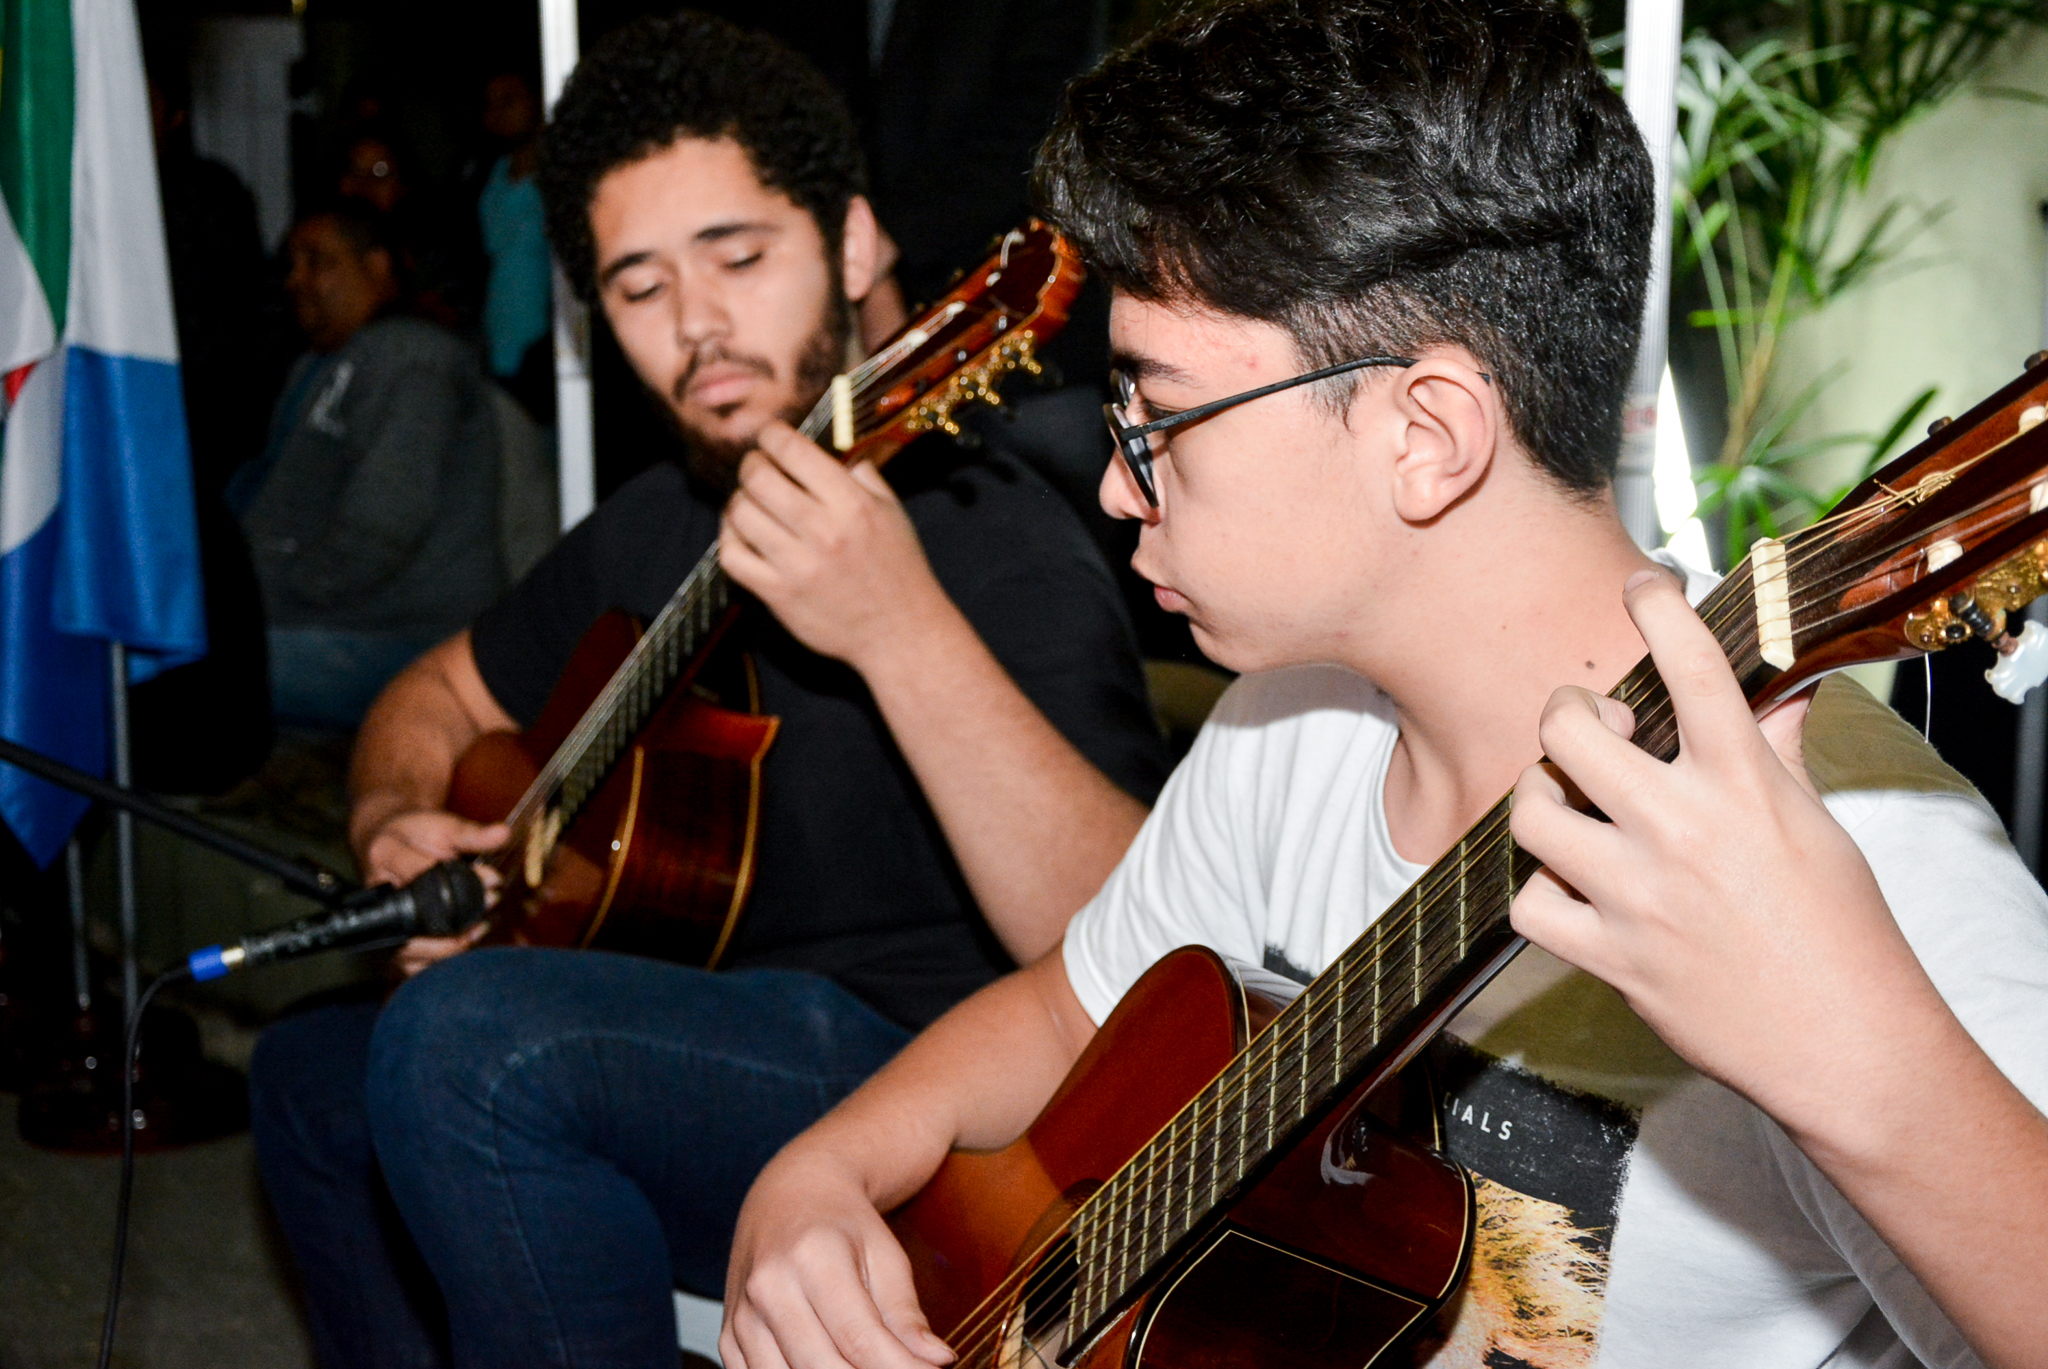 Bertioguenses participam de tradicional concurso de violão no Brasil